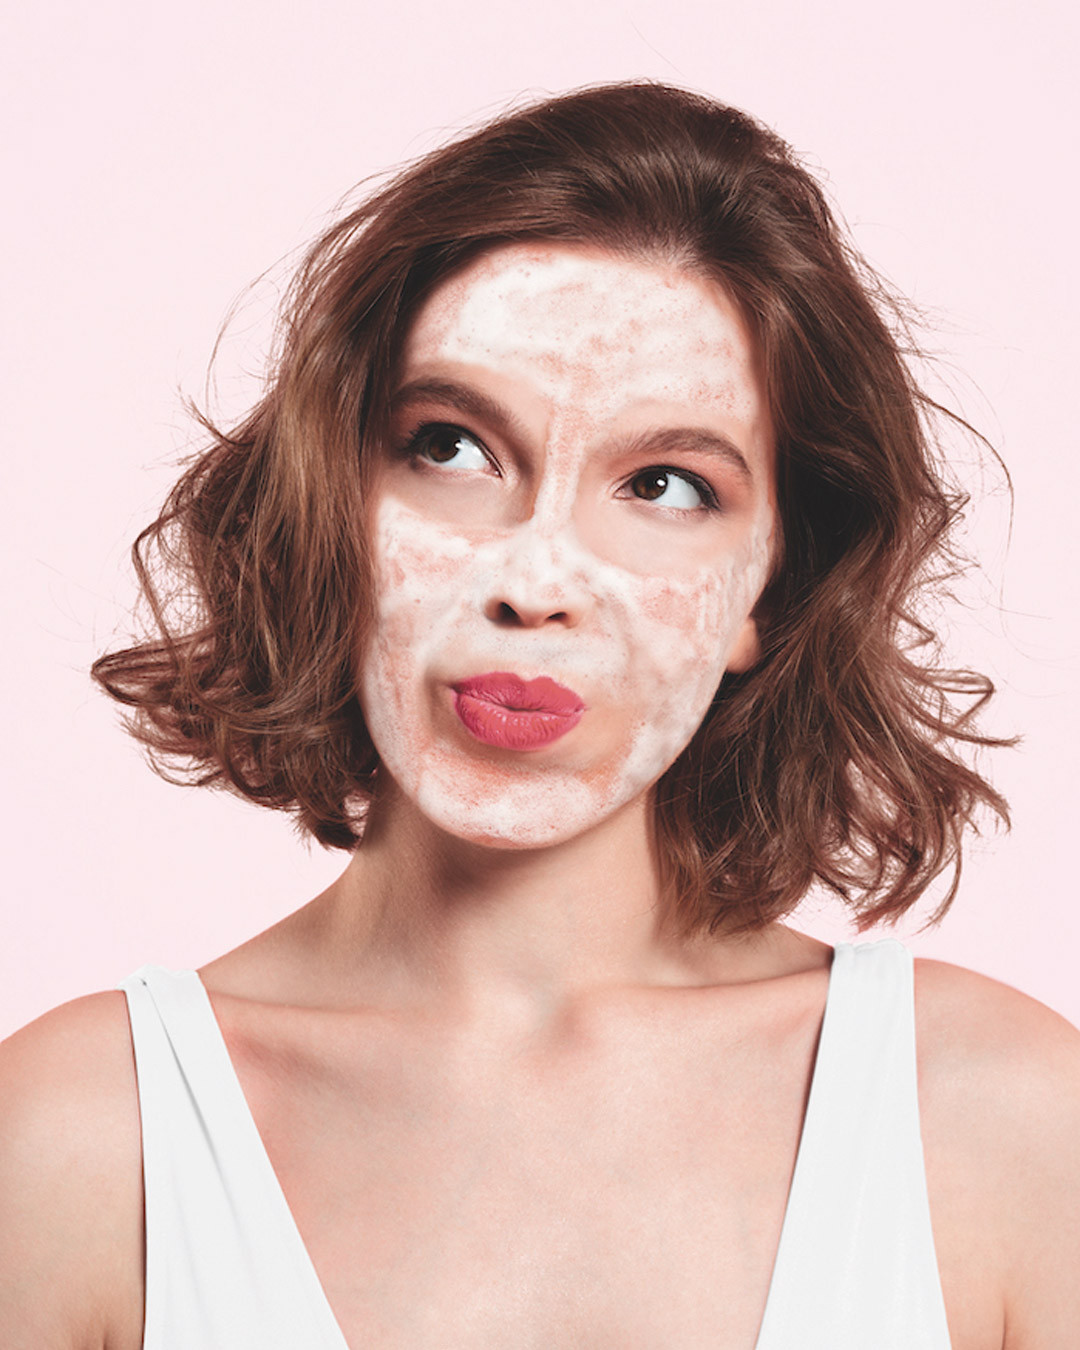 Article : Bubble mask : faites crépiter votre routine beauté !